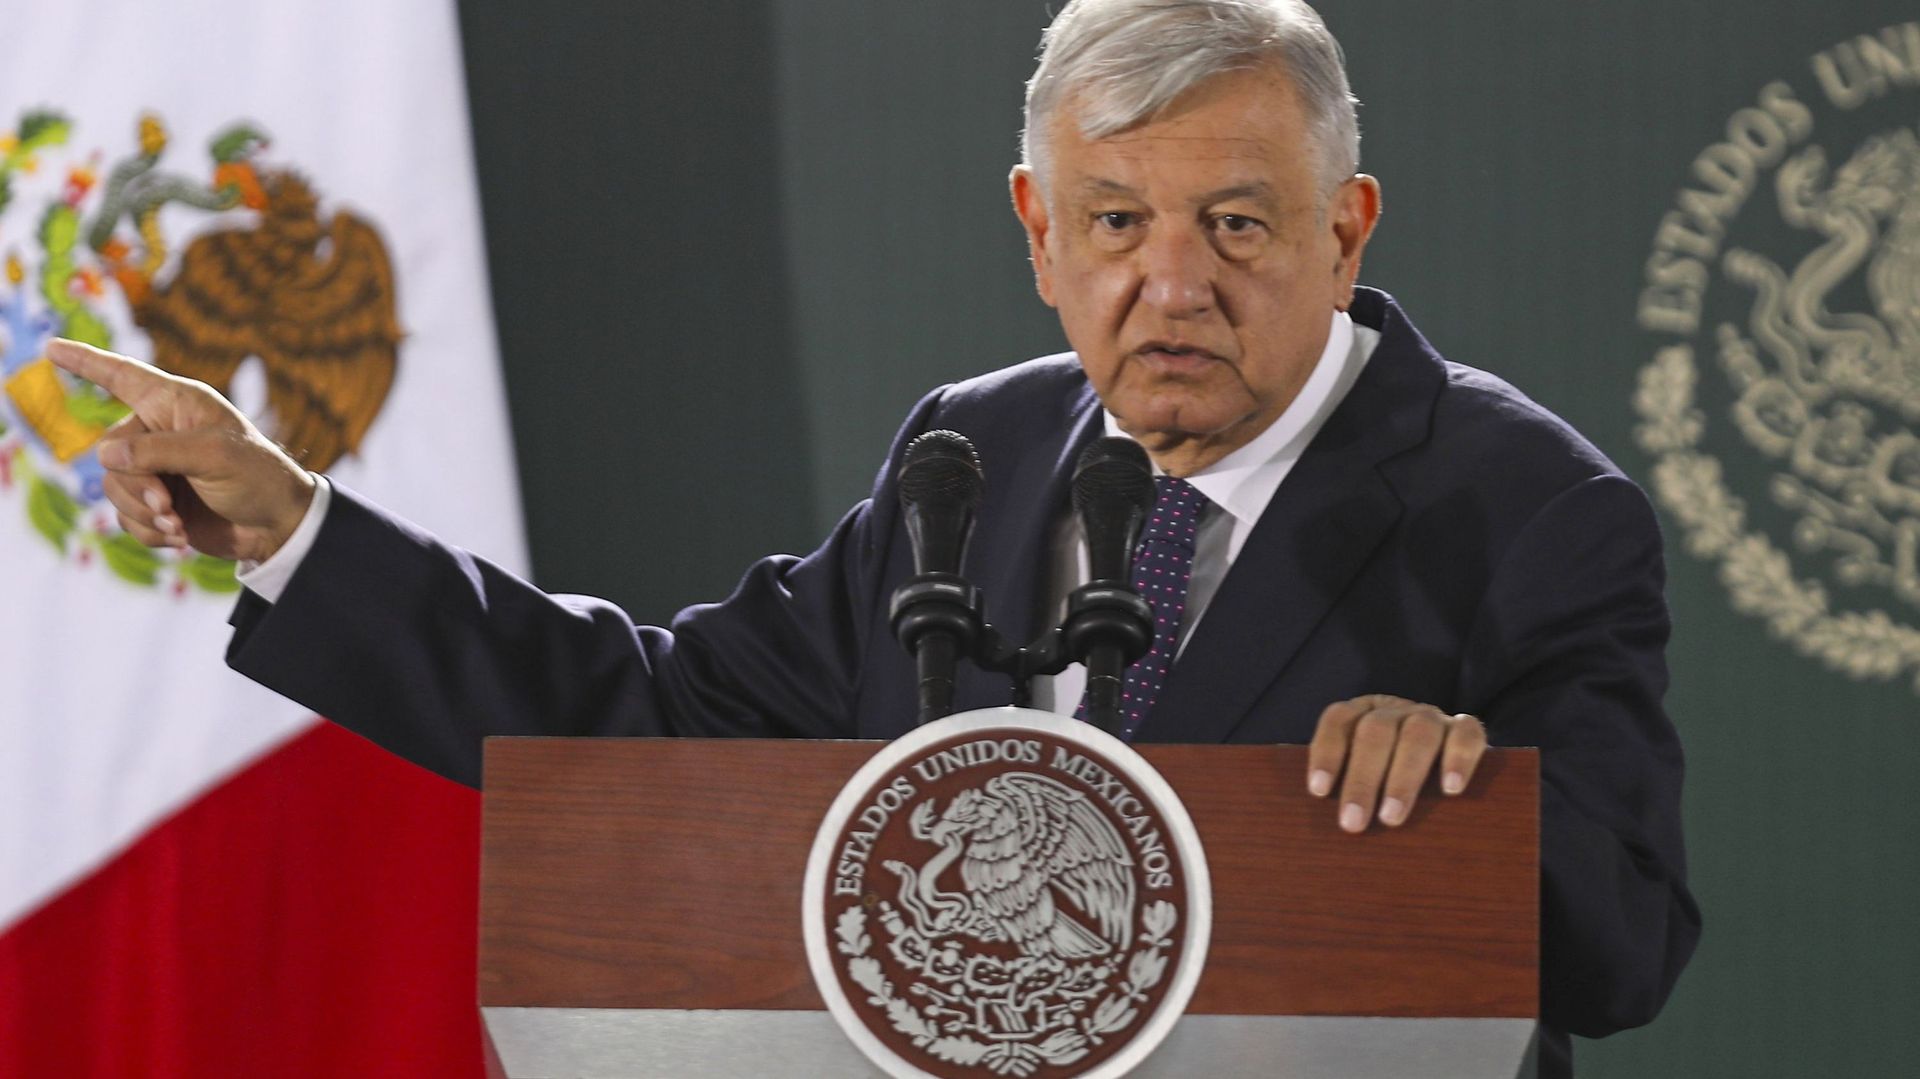 Andrés Manuel López Obrador est président des États-Unis mexicains depuis le 1ᵉʳ décembre 2018.